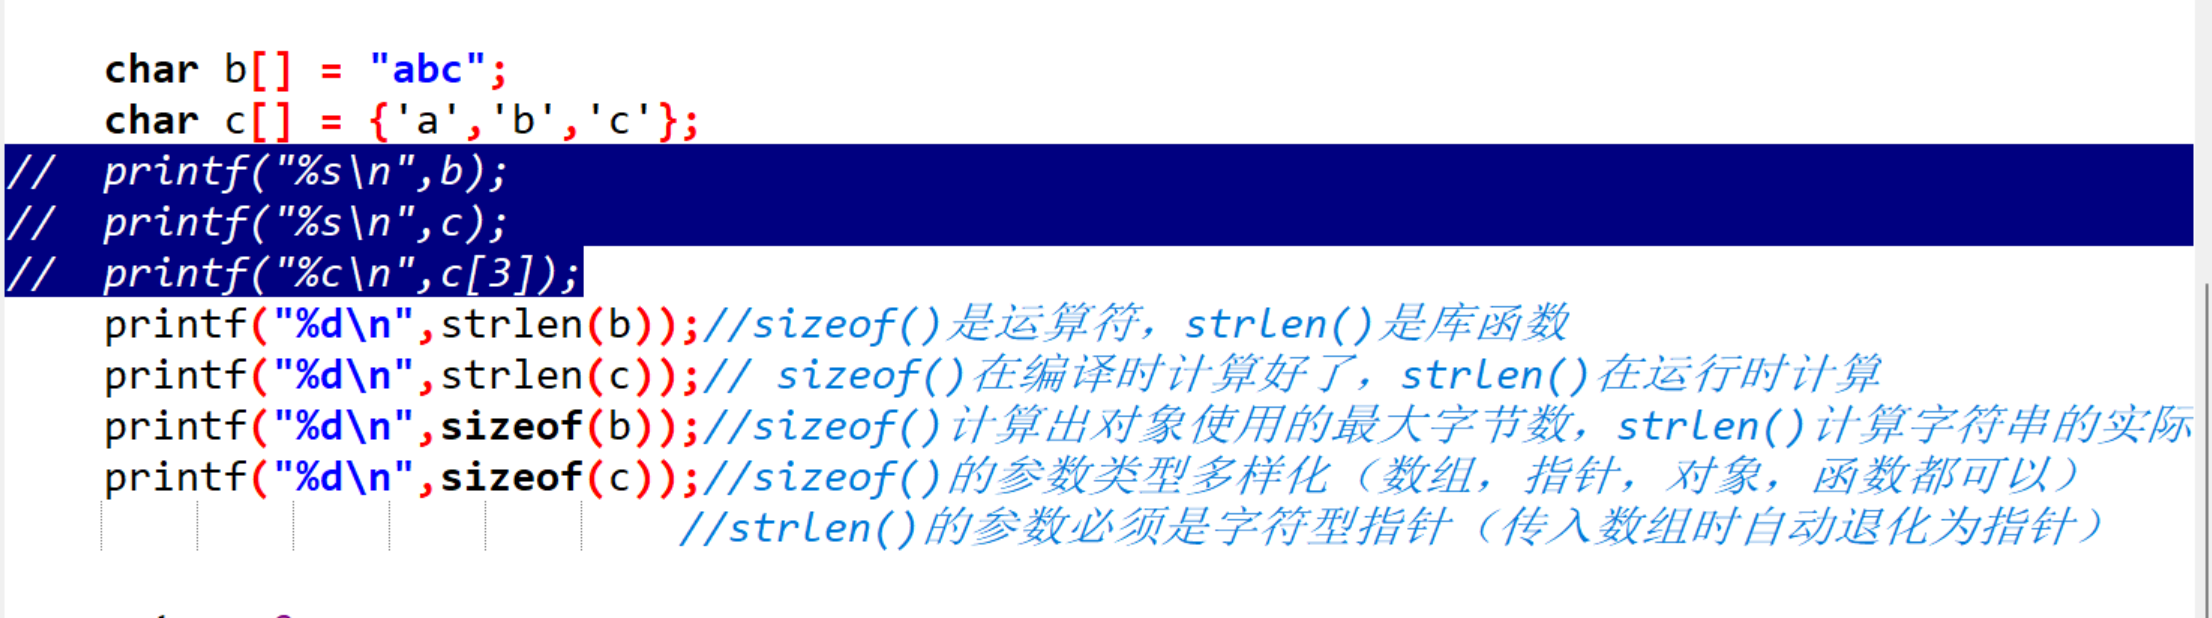 新手c语言小白第一篇博客strlen（） 和sizeof（） 的区别_字节数